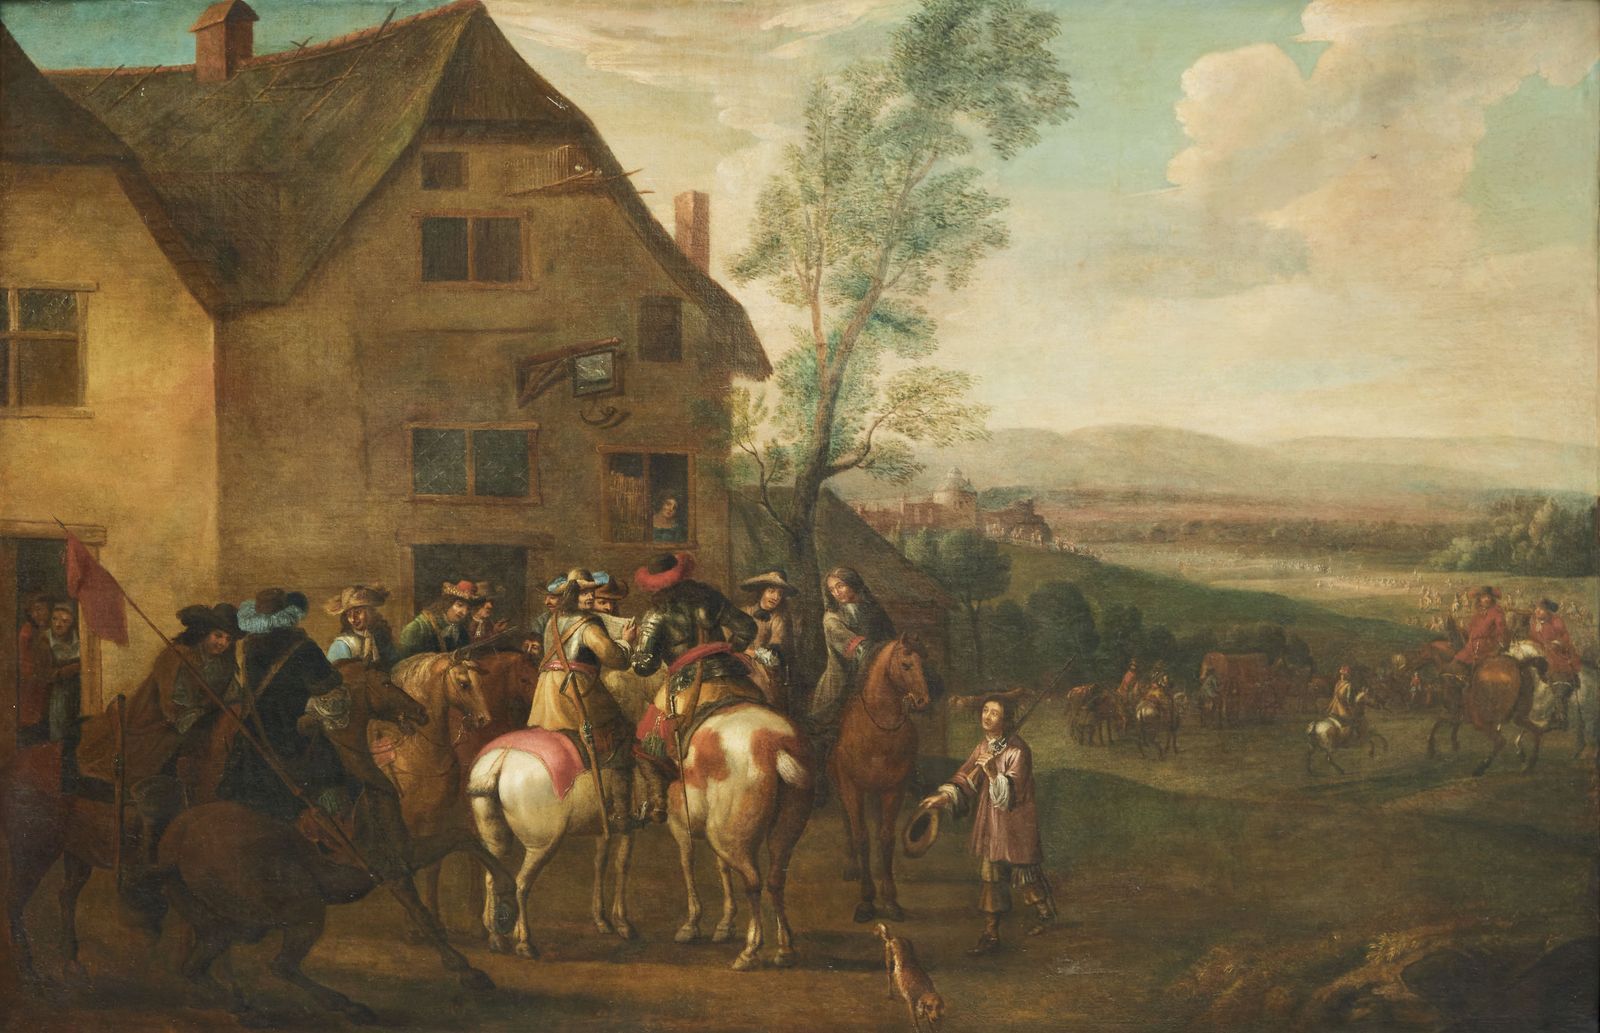 Null 324 佛兰德学校 17世纪末或18世纪初

士兵的停顿

布面油画

(旧的修复物)

132 x 200 cm